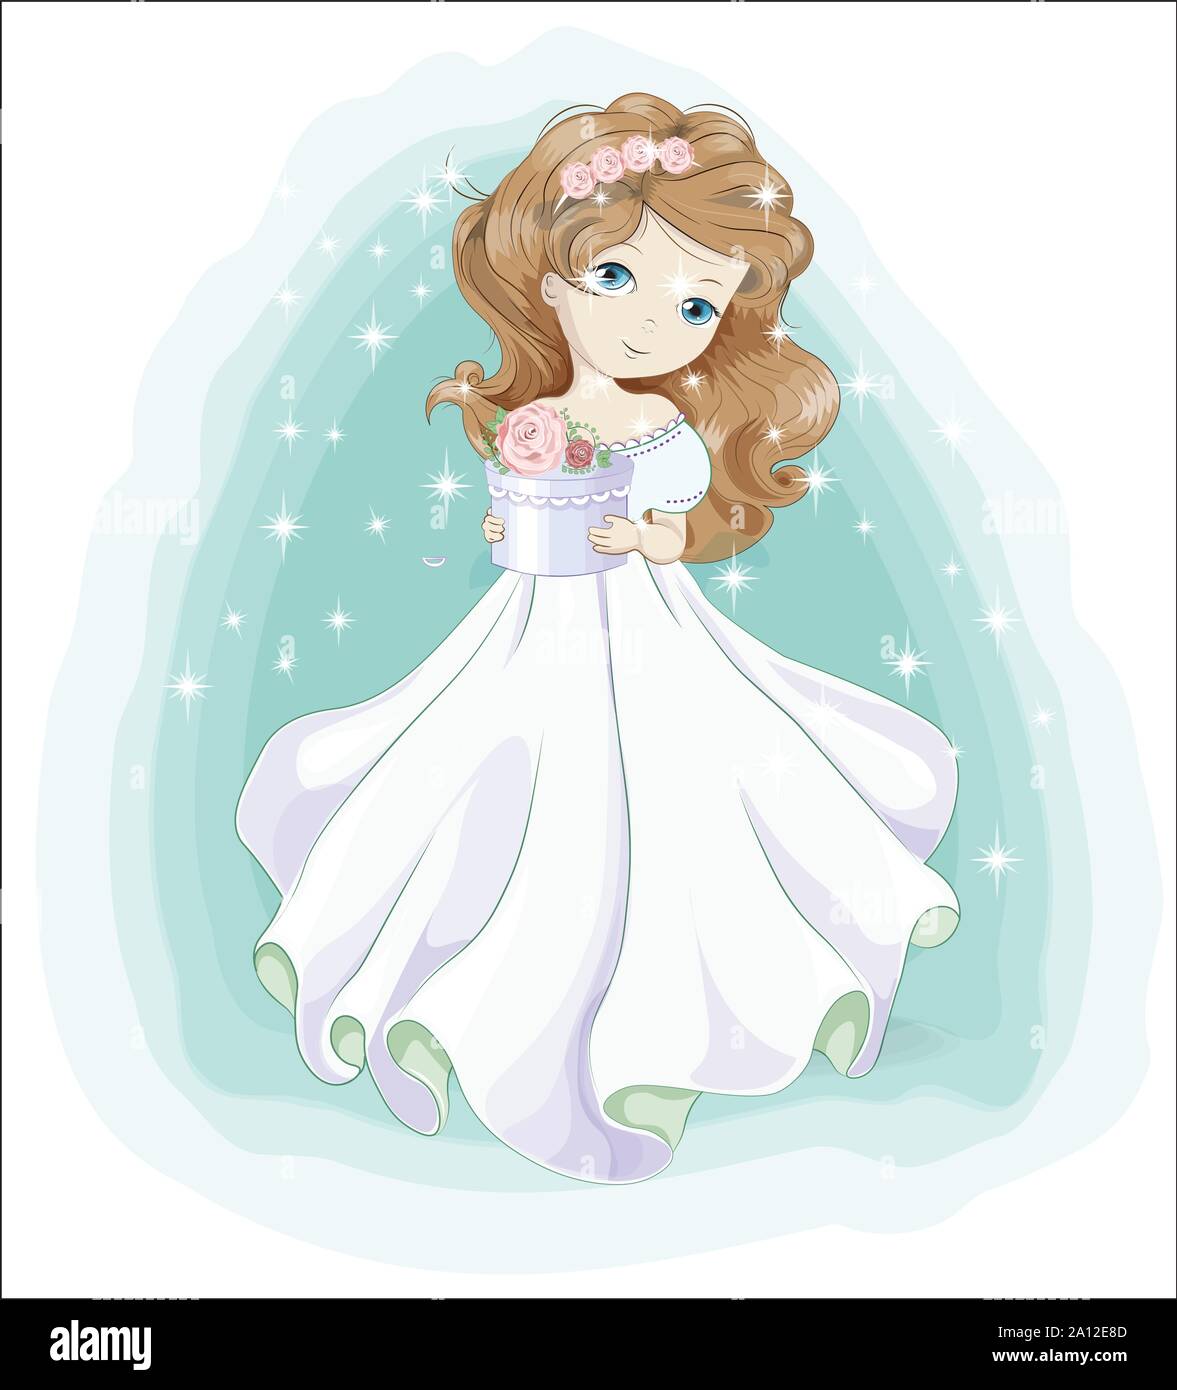 Belle, charmante petite princesse, ange de Noël, en robe blanche avec don.  La photo en dessin à la main, style maison de vacances et carte de Vœux  Image Vectorielle Stock - Alamy